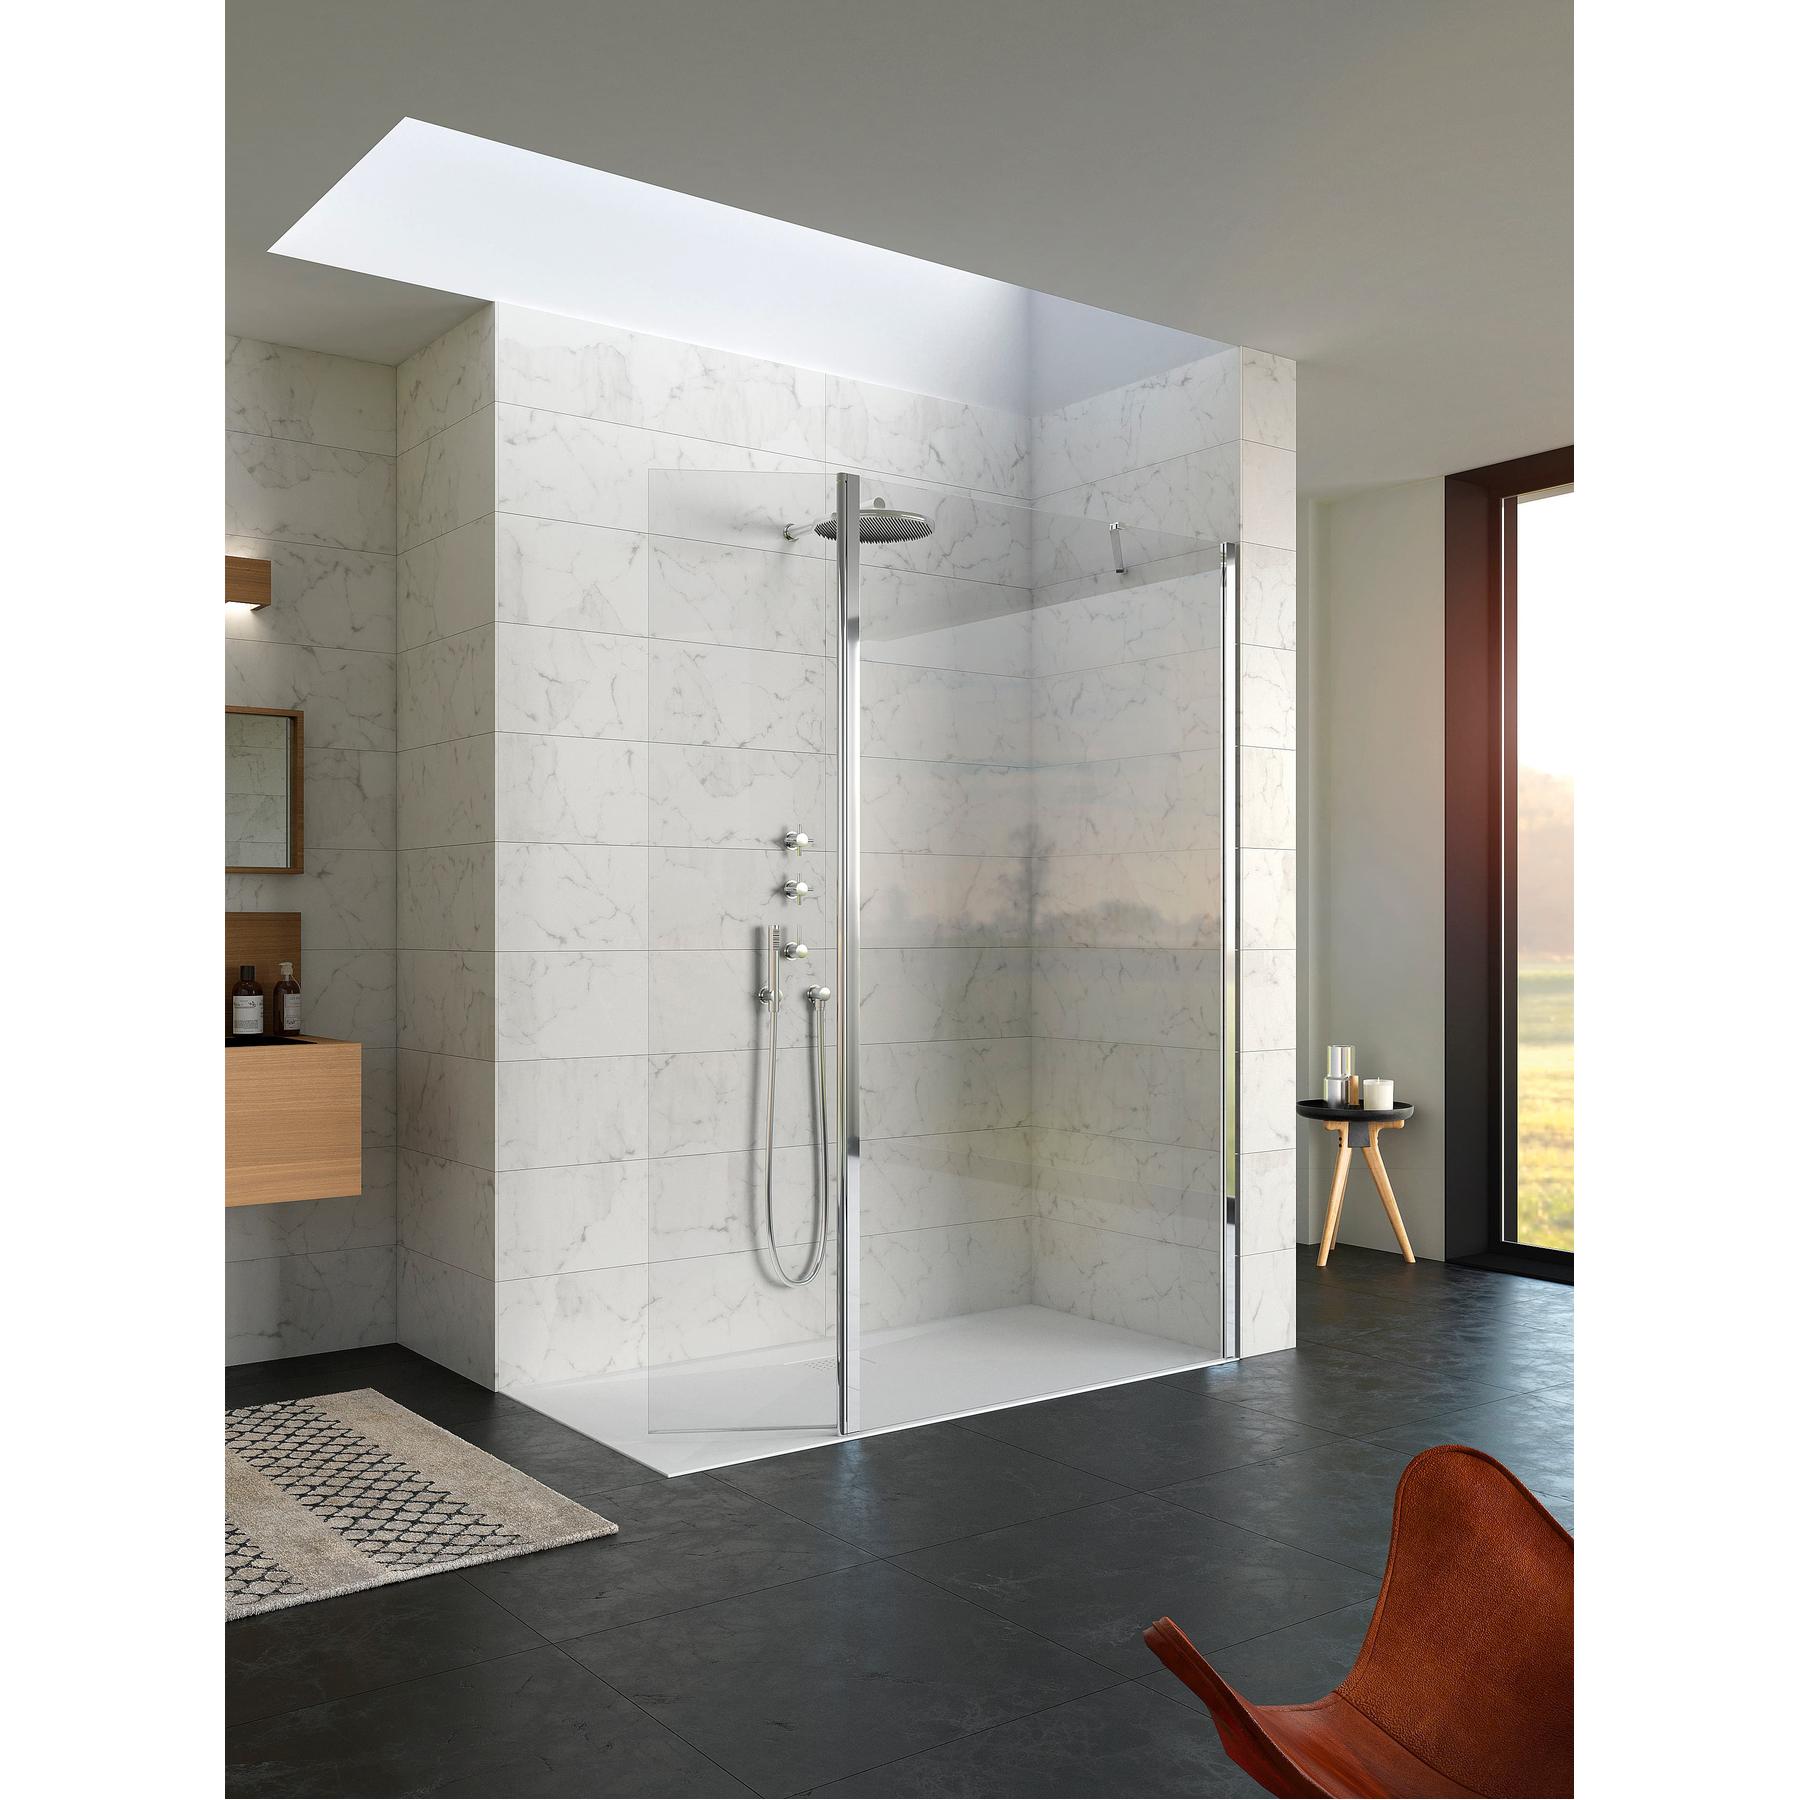 Paroi de douche fixe hauteur 2m largeur 1.60m avec porte pivotante 180 KINEQUARTZ Duo fixation à droite sur profilé mural chromé verre transparent